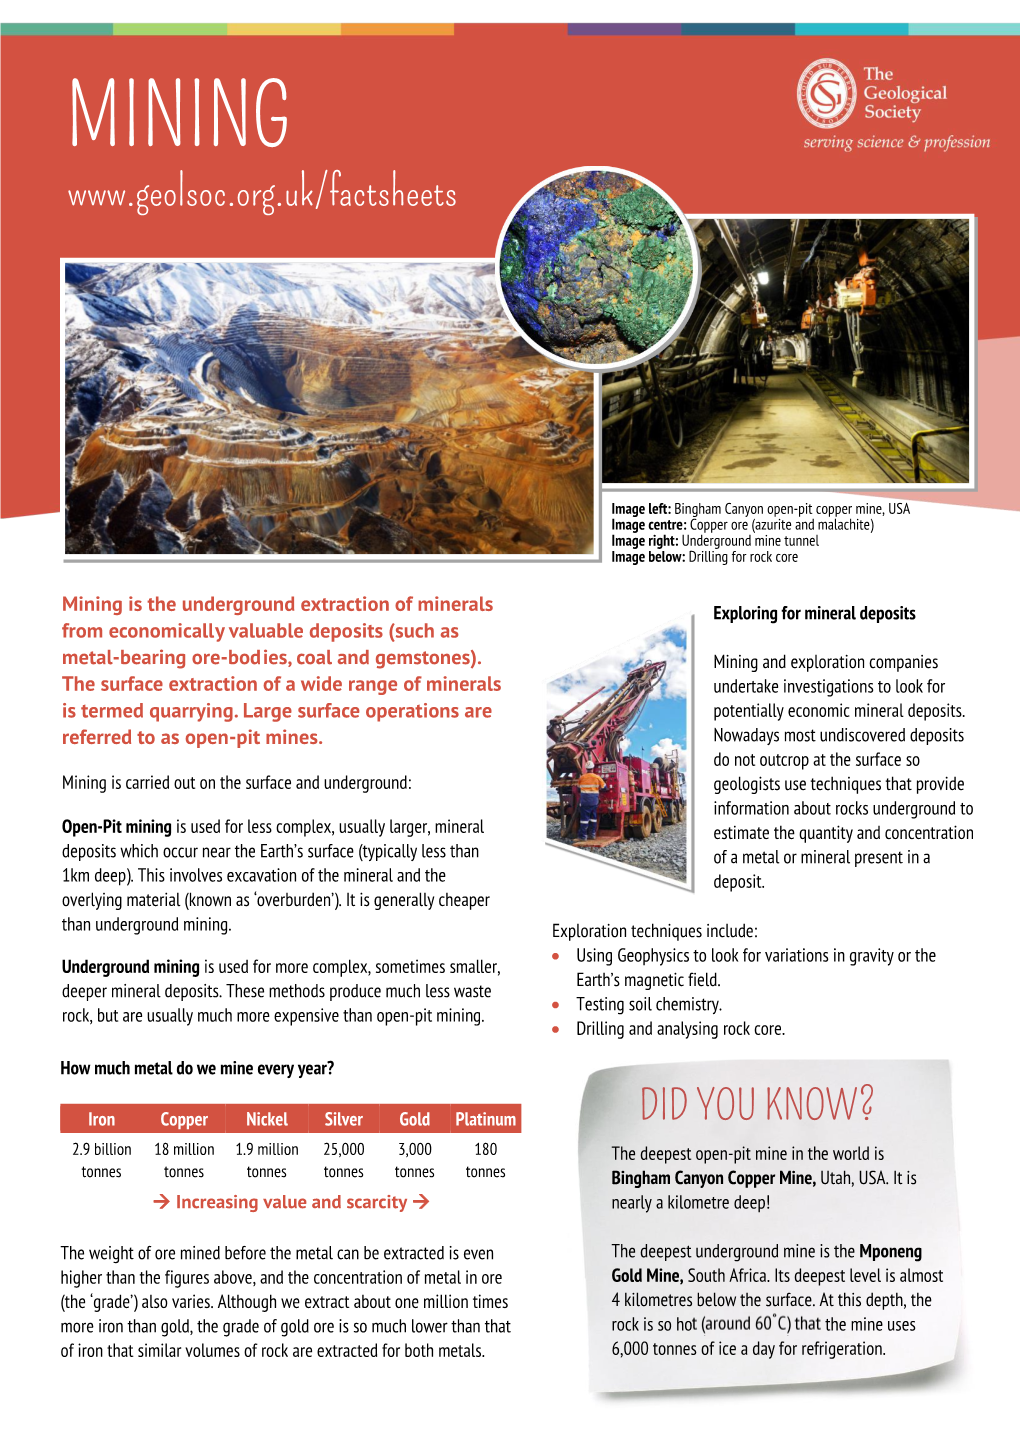 Download the Mining Factsheet